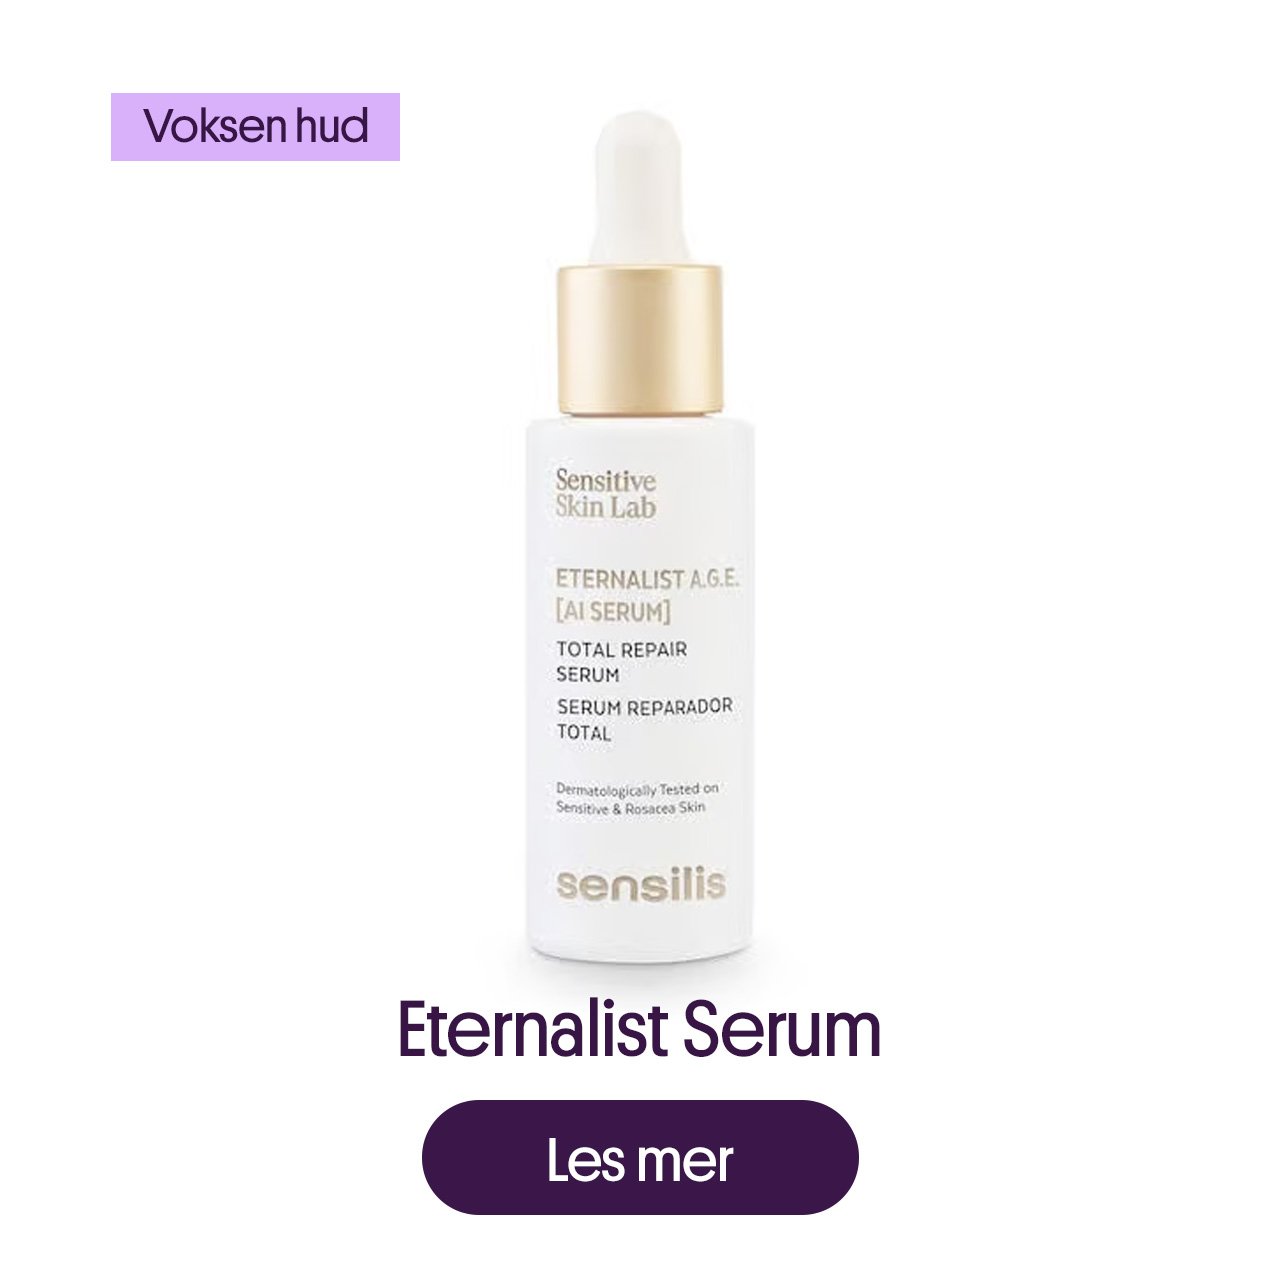 Eternalist serum for voksen hud